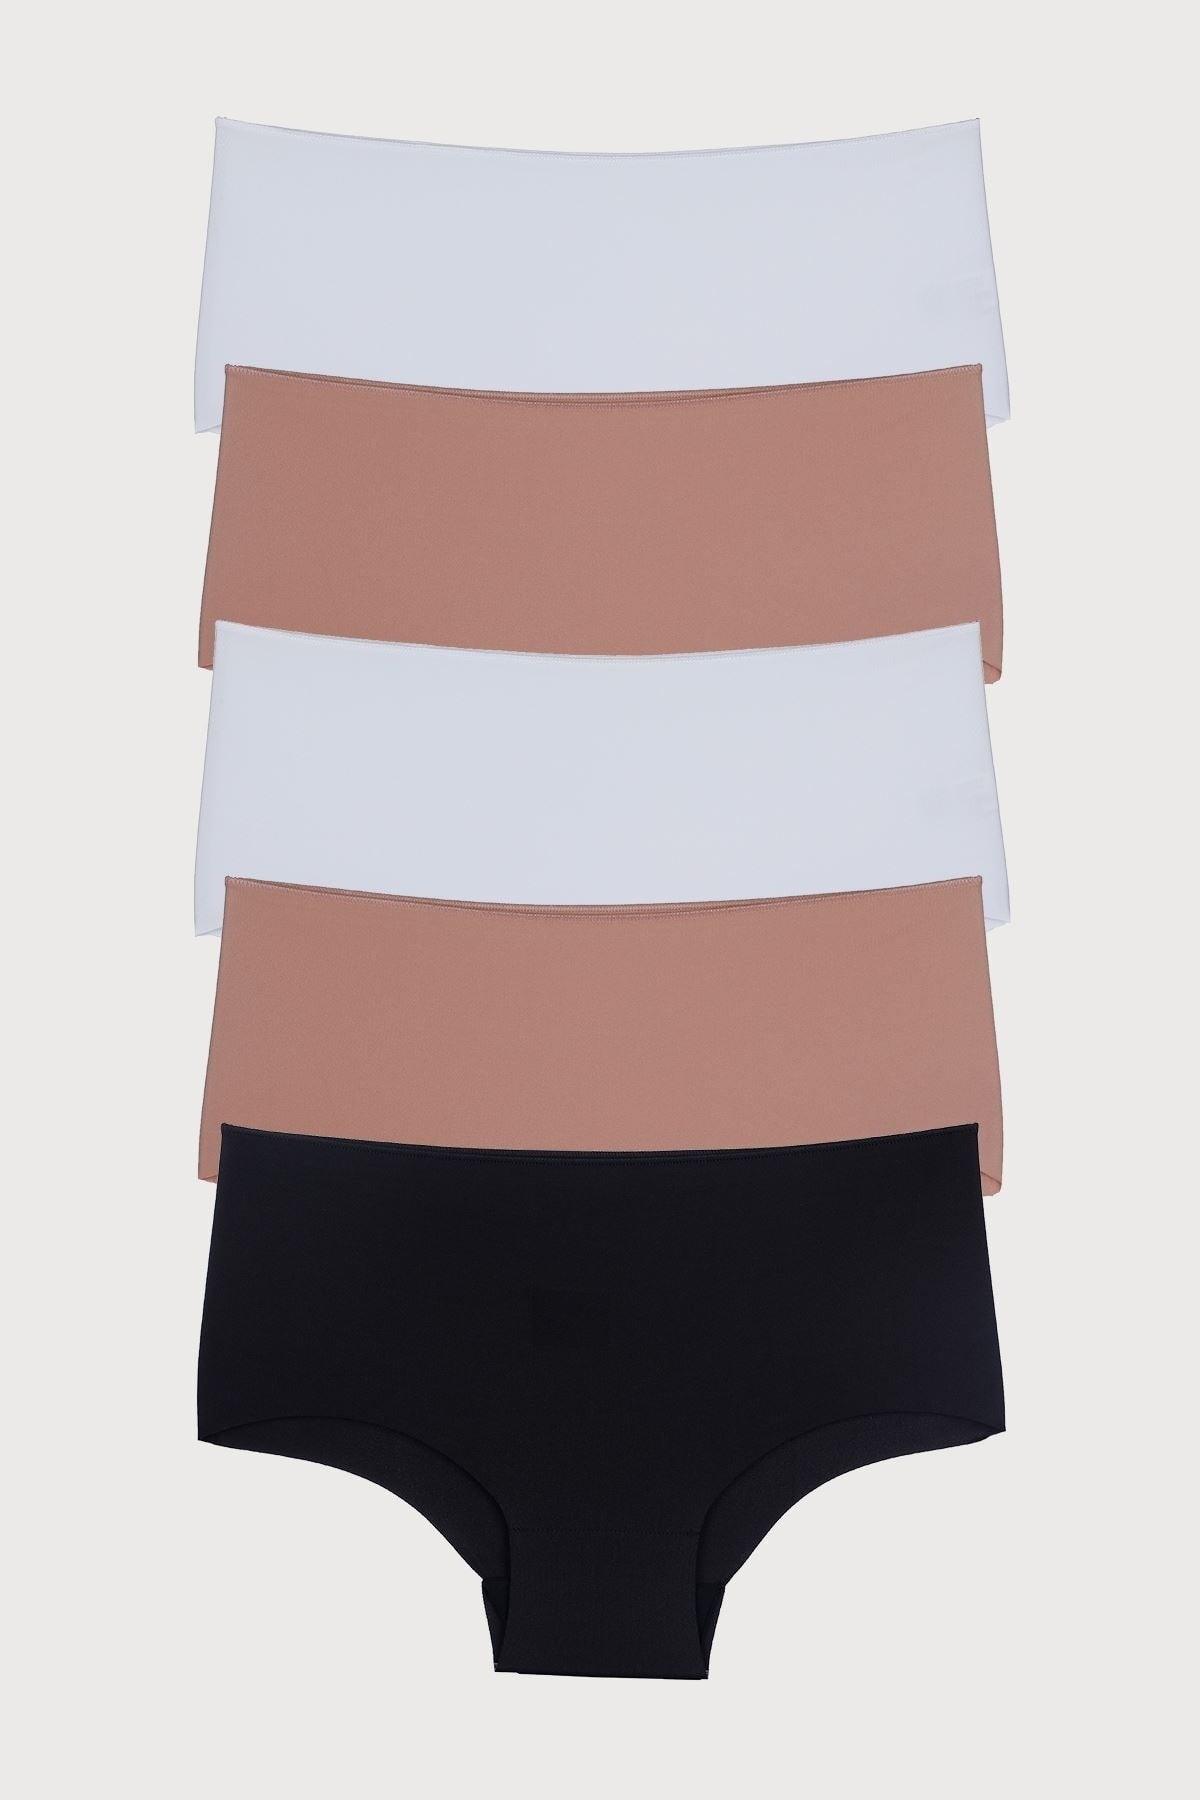 Mixcolor Women's Panties High Waist Laser Cut Flexible Non-Trace Plus Size 5 Pack - Swordslife